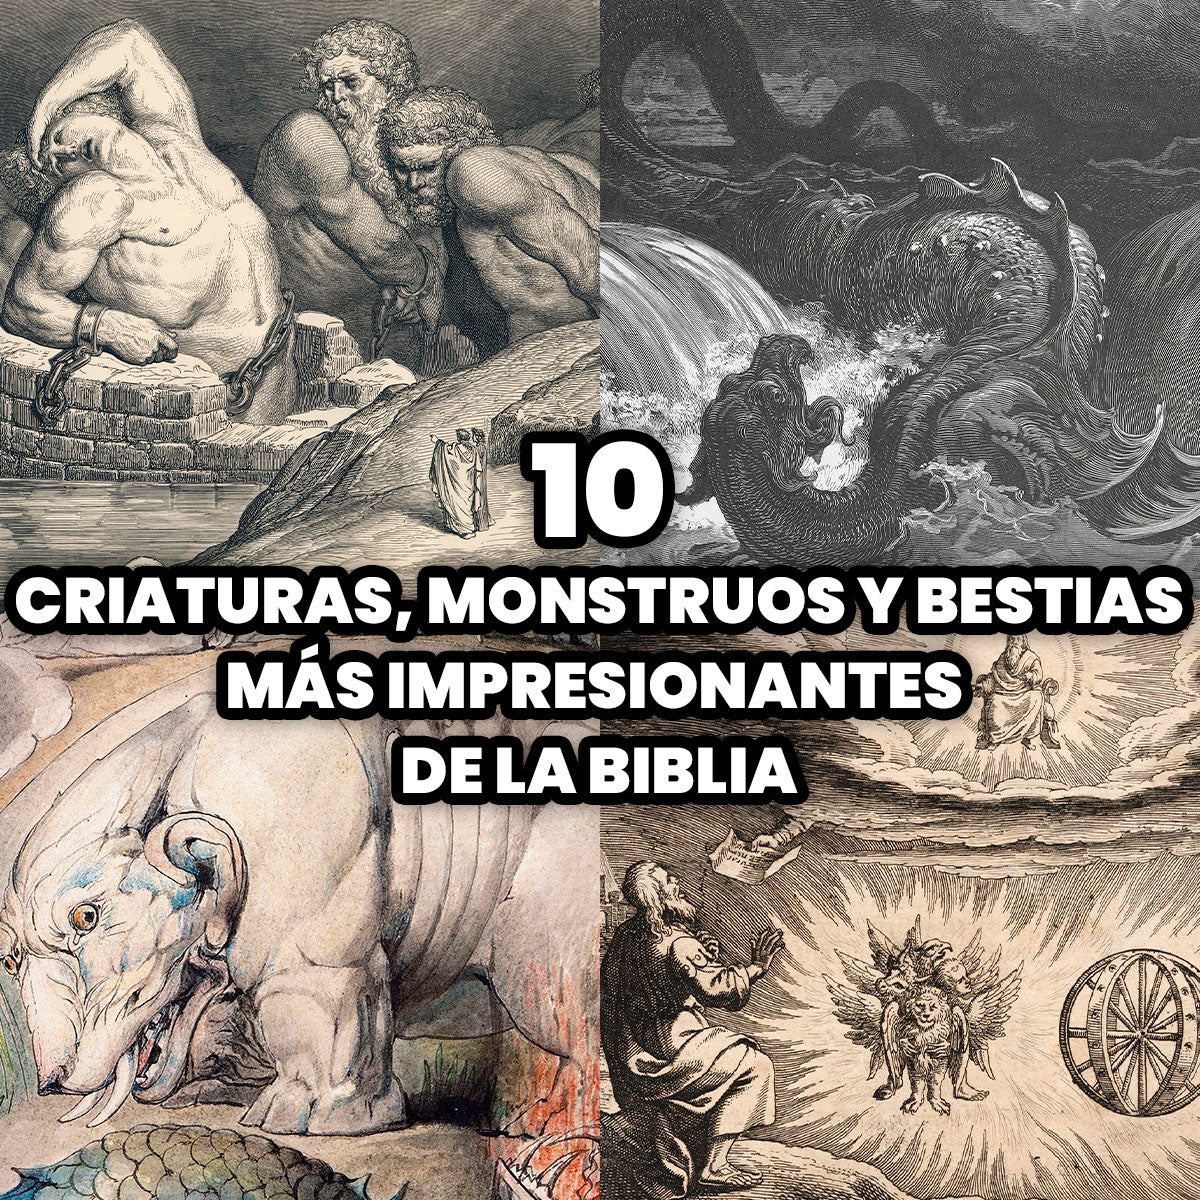 Las Criaturas, Monstruos y Bestias más Impresionantes de la Biblia